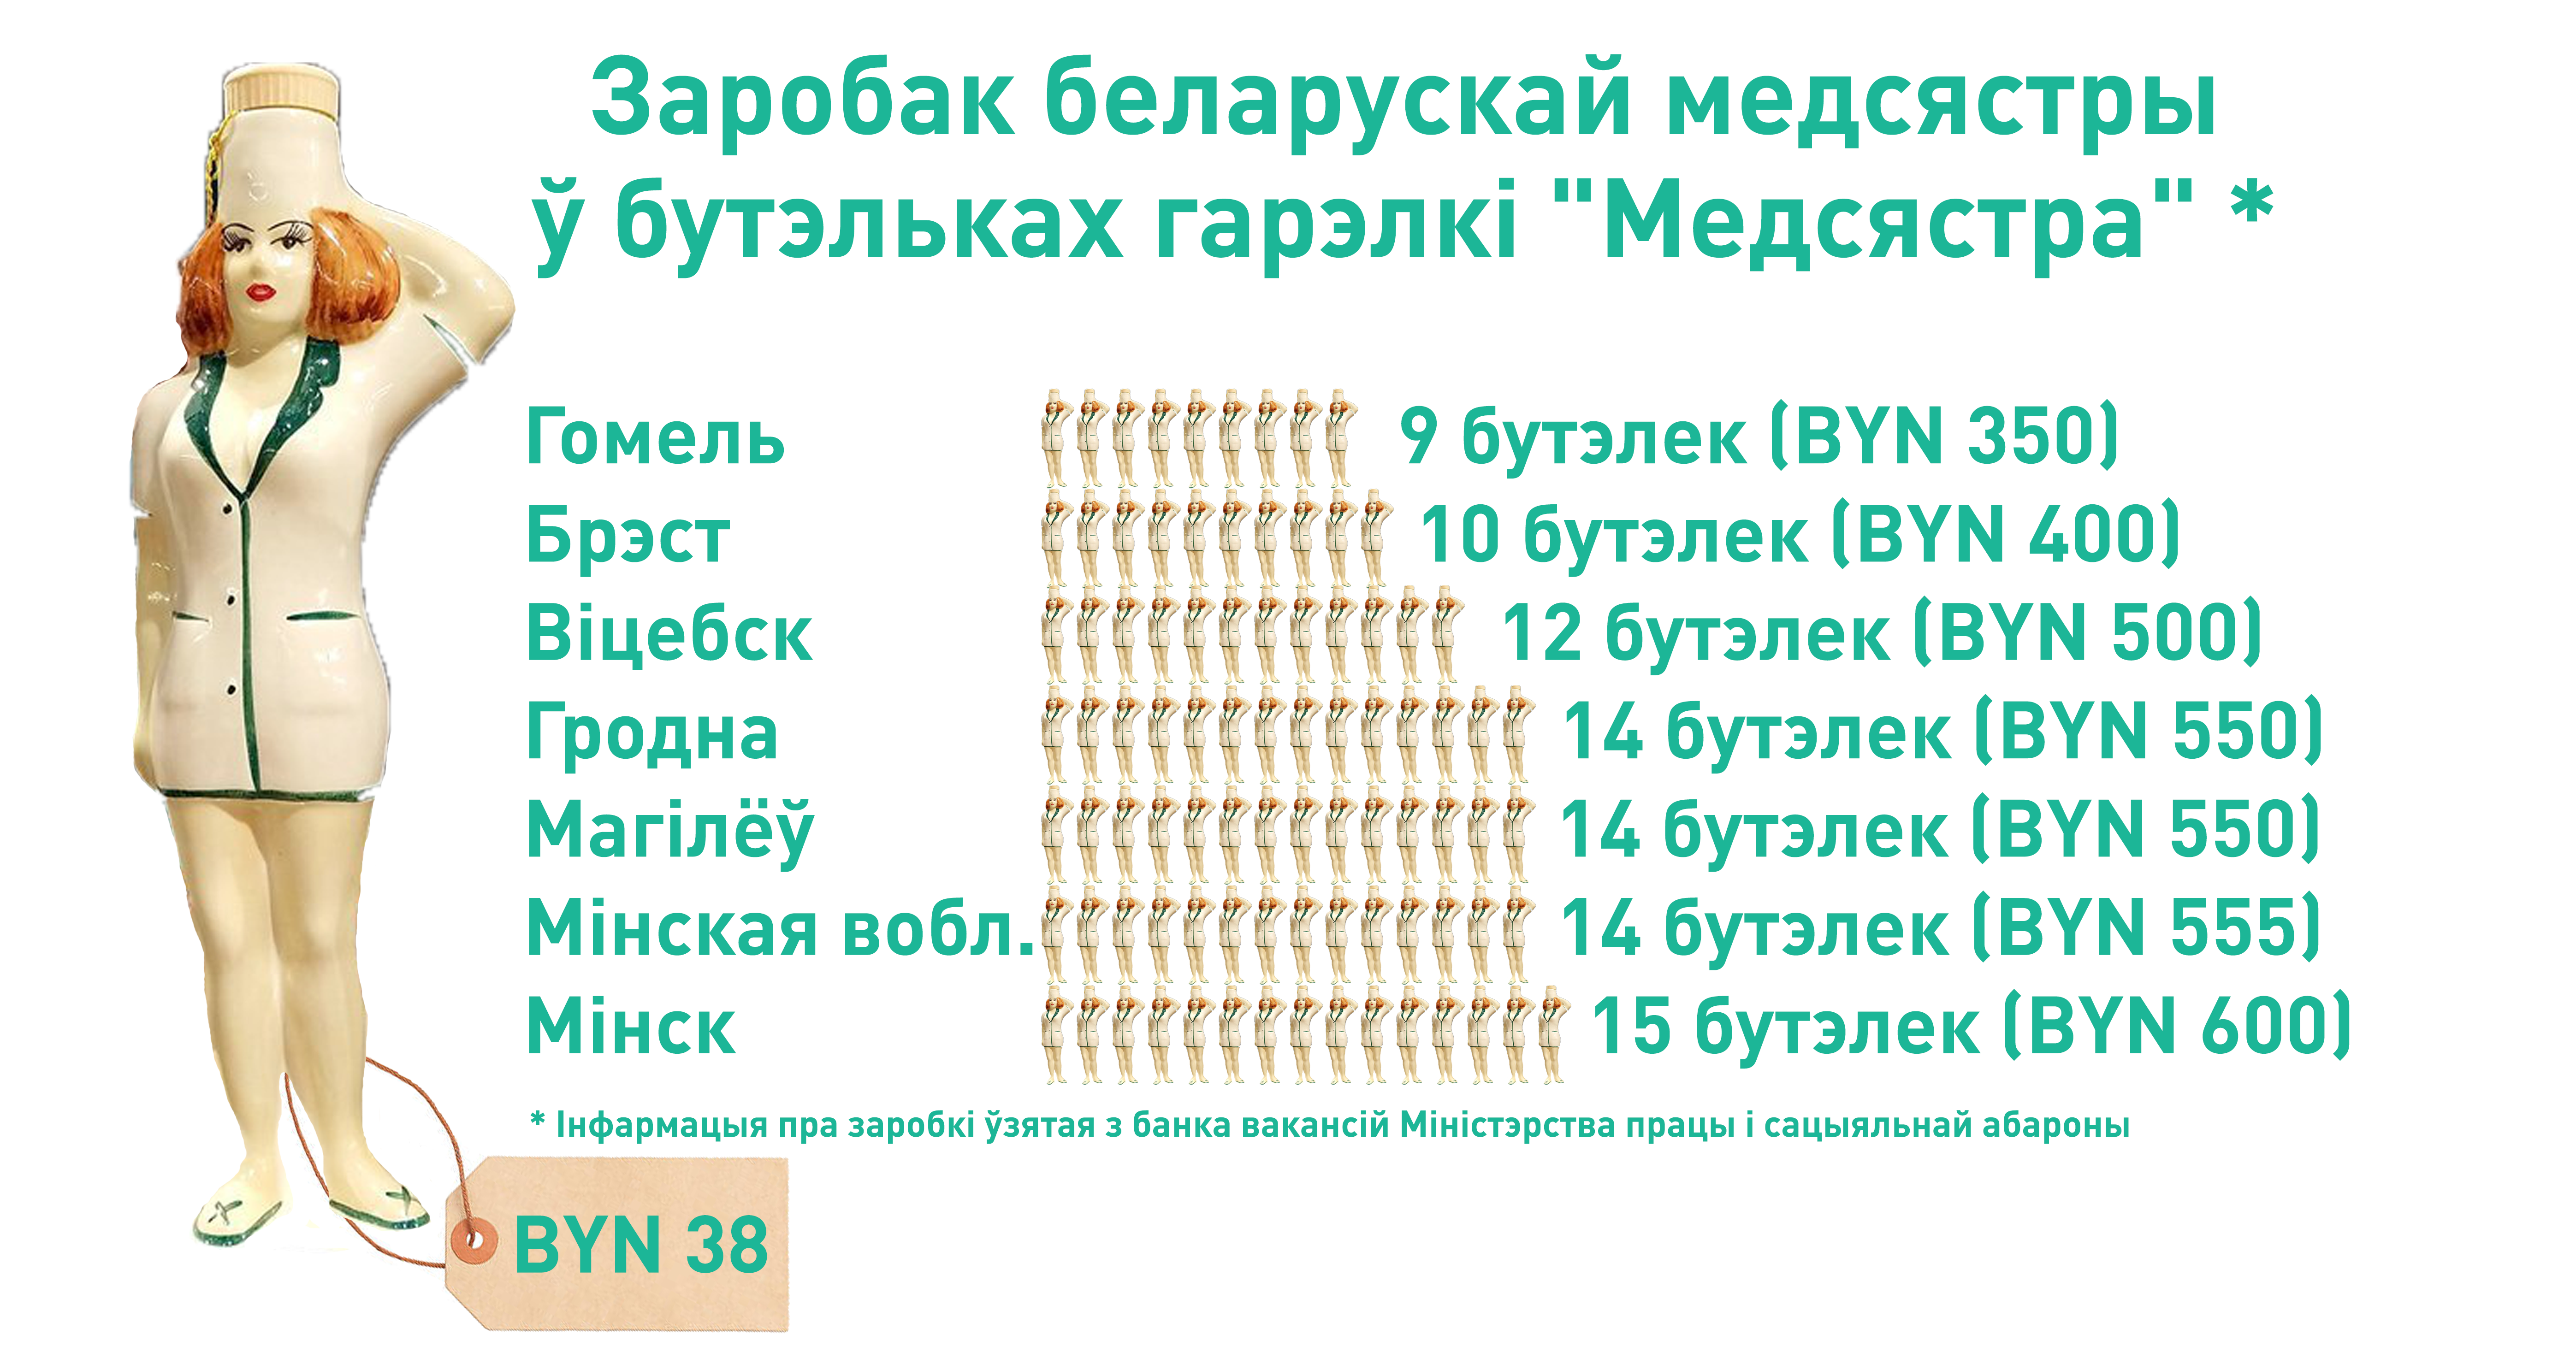 В Гомеле — 9, в Минске — 15: зарплата белорусской медсестры в “Медсёстрах” 